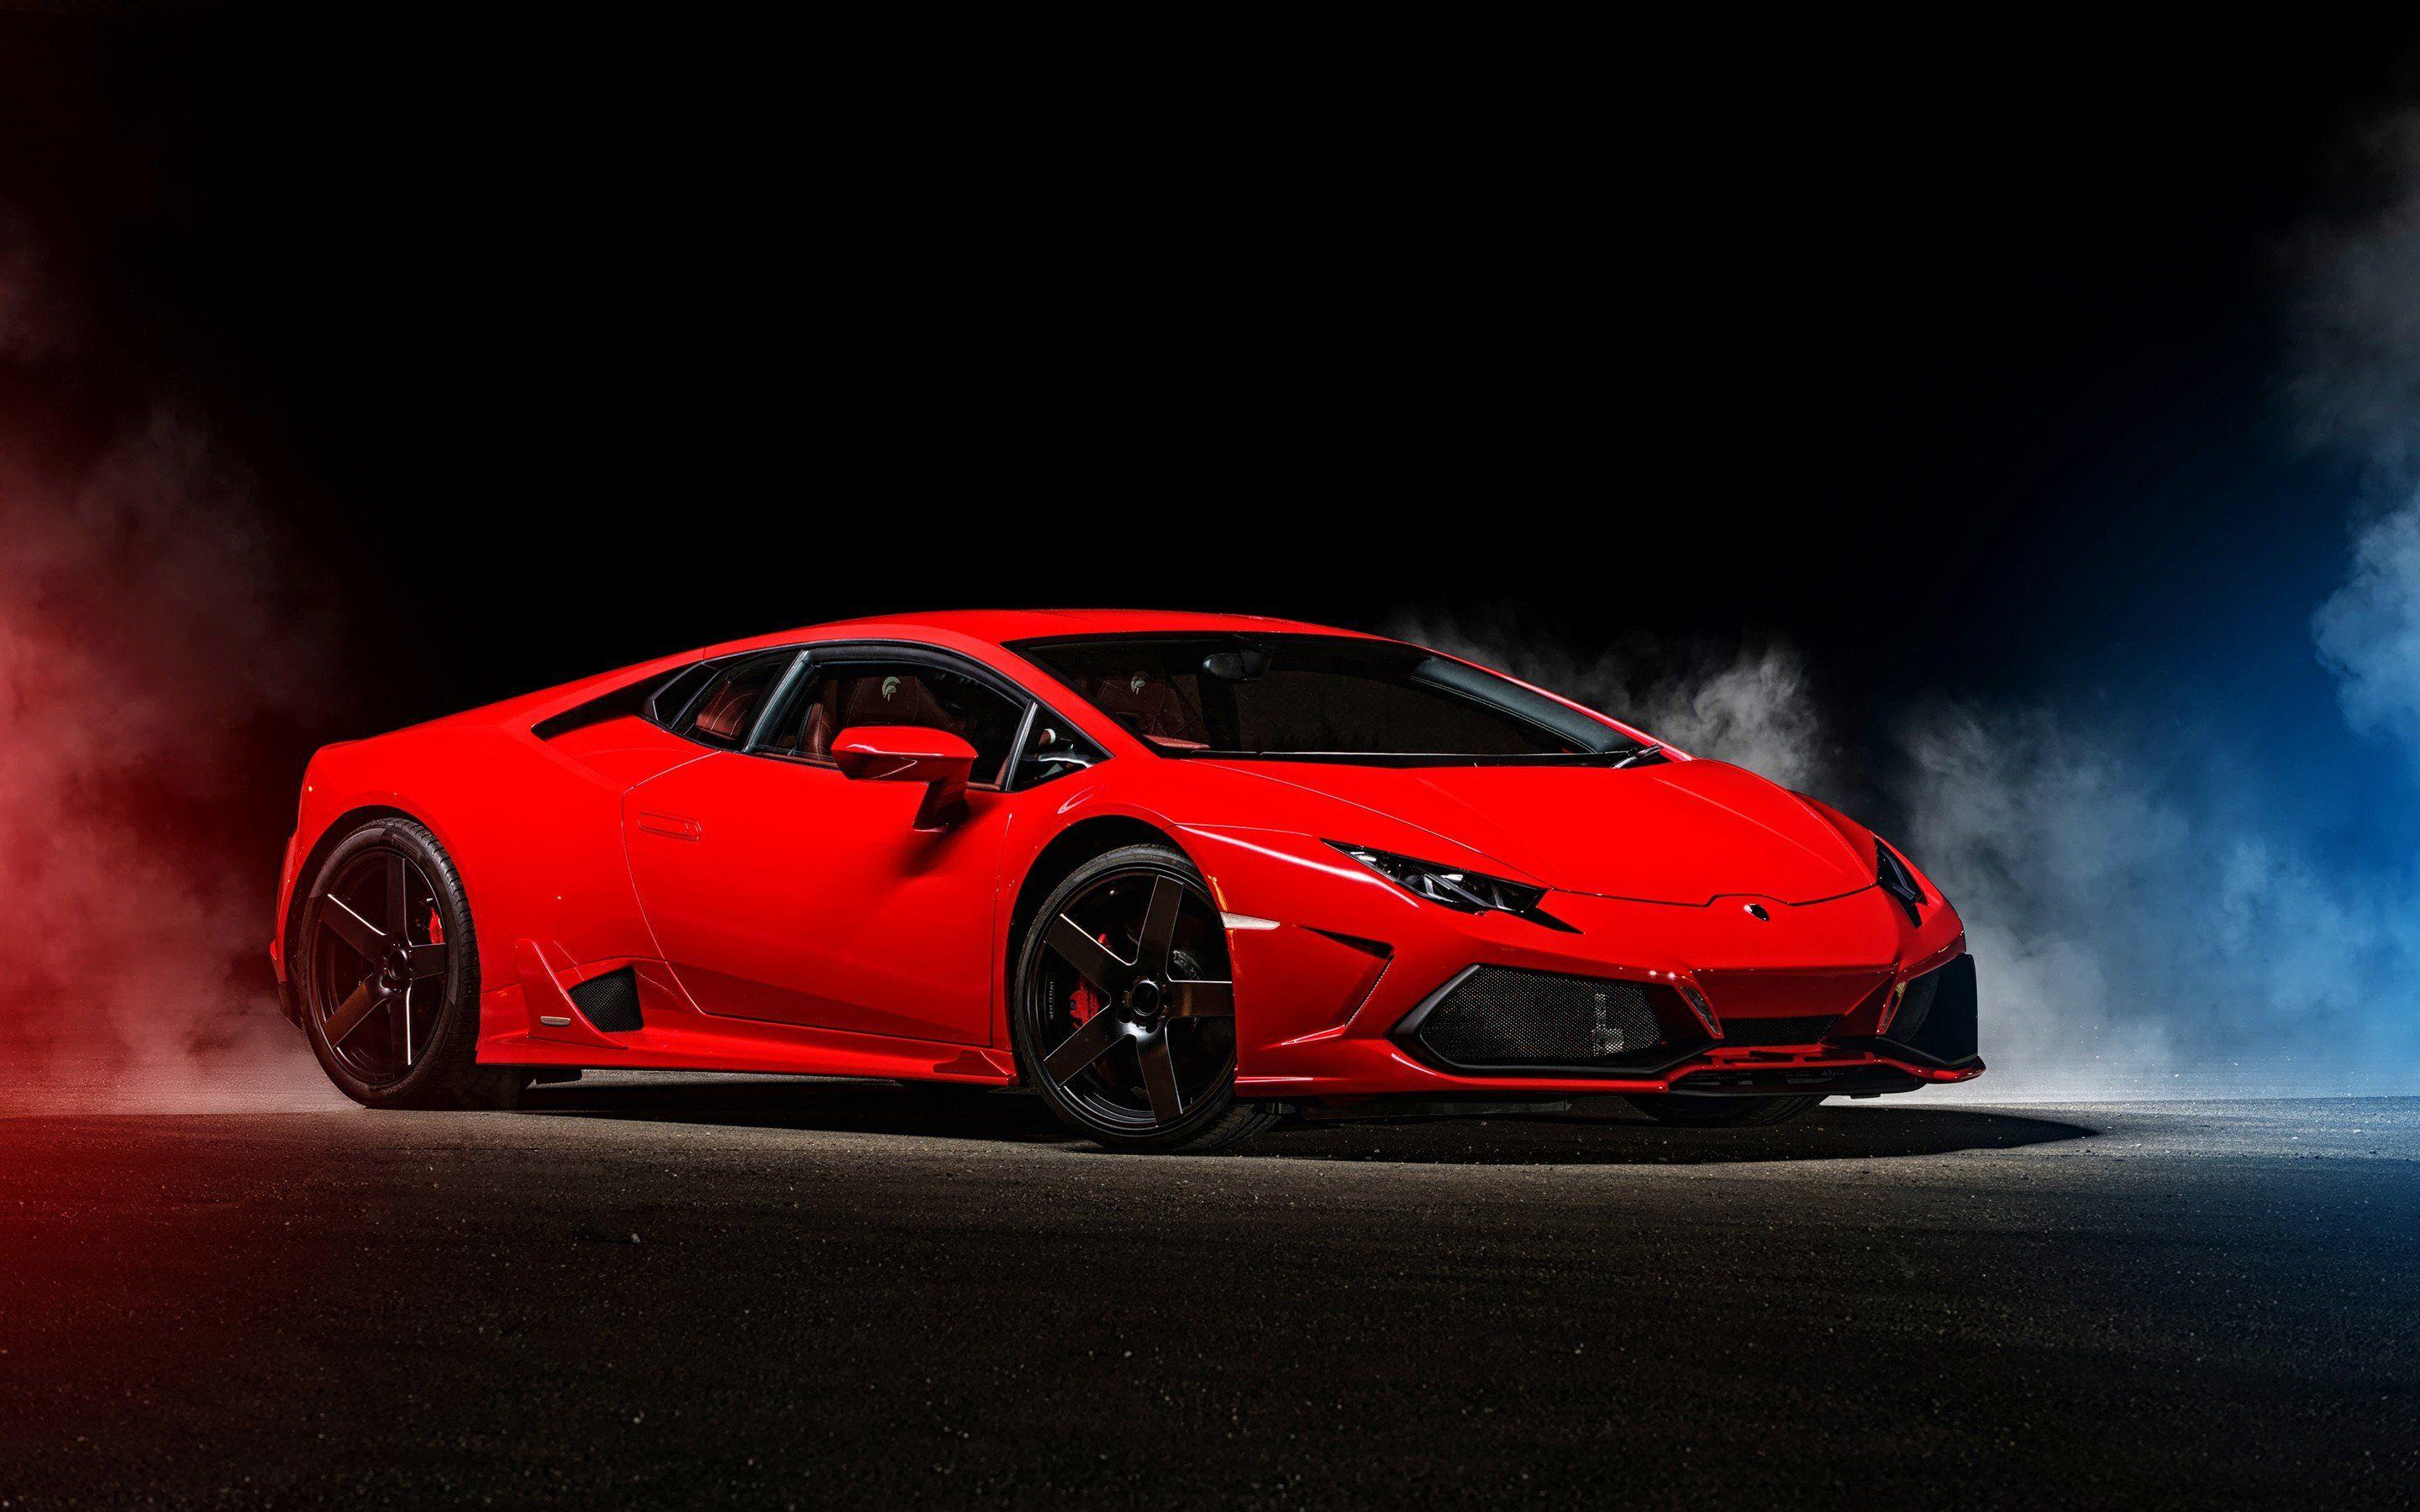 Cool Red Lamborghini Wallpapers - Top Những Hình Ảnh Đẹp